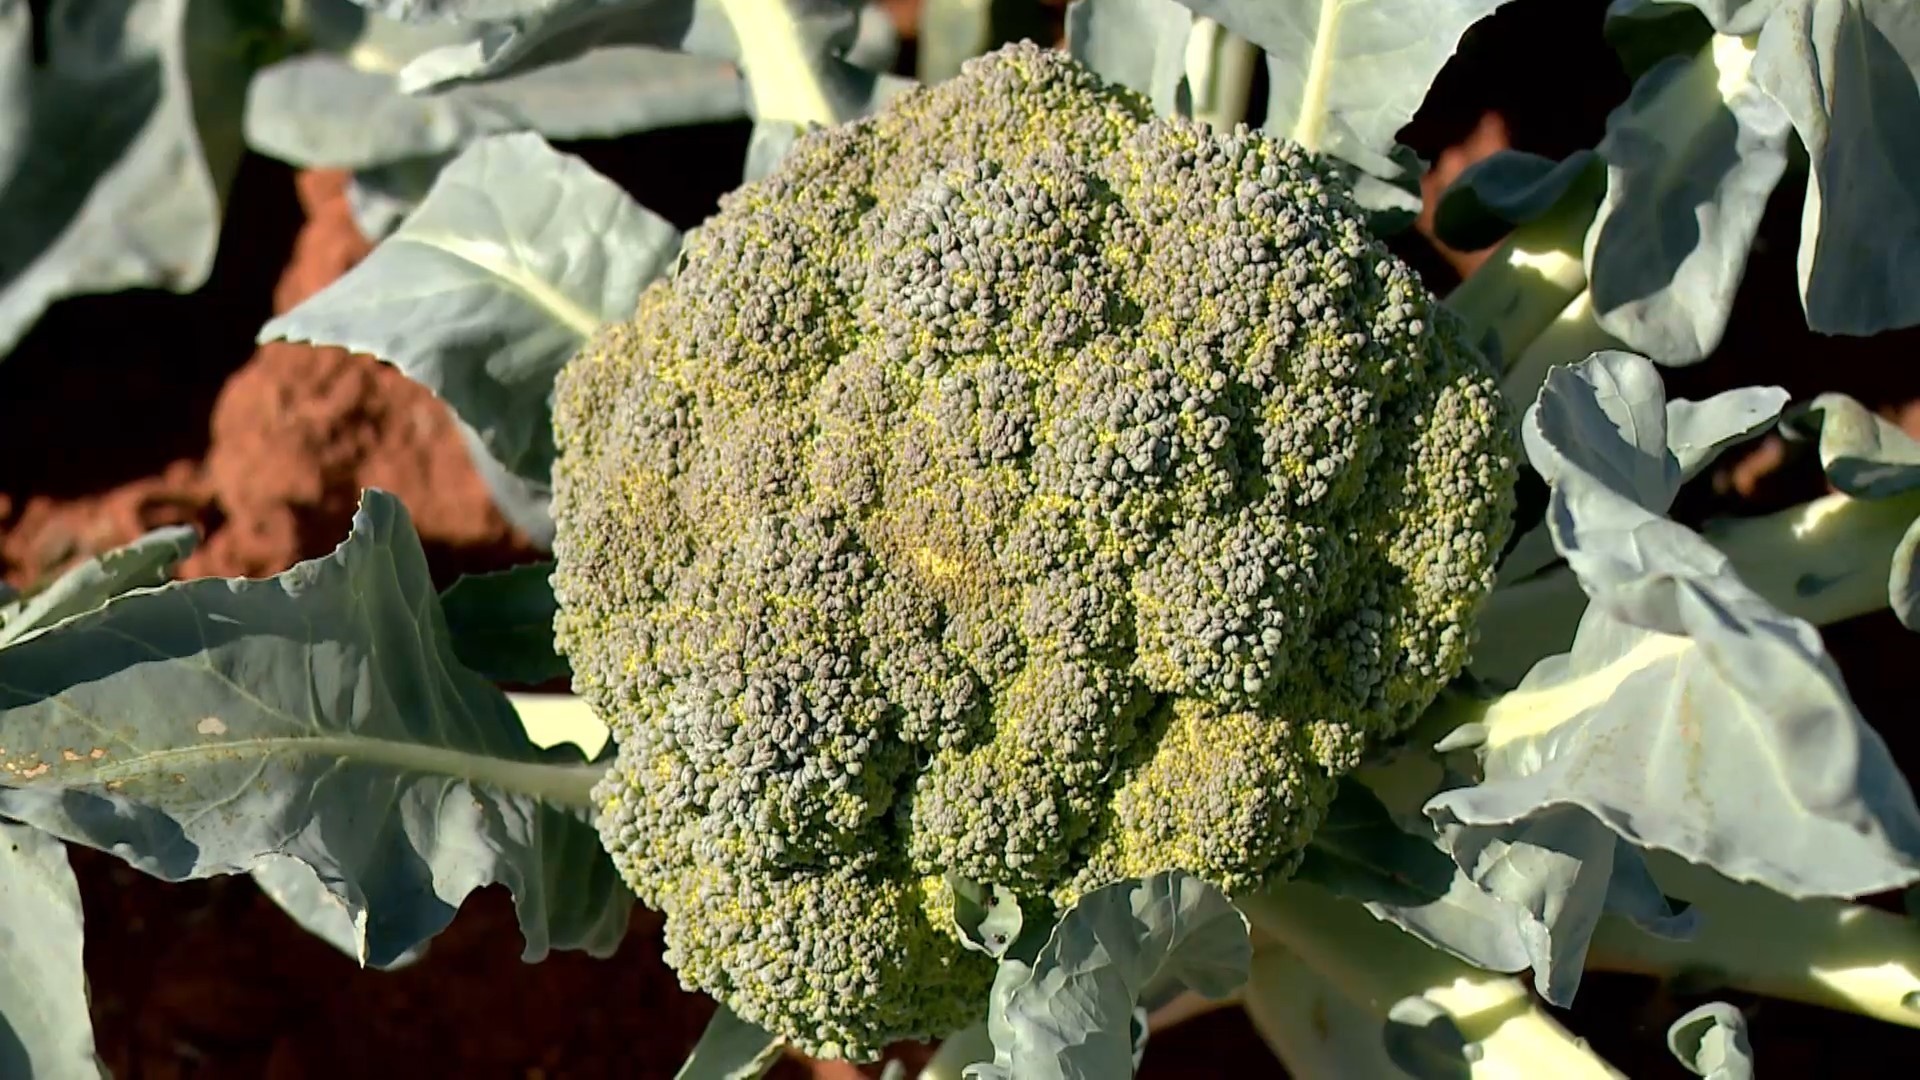 Produtores cultivam brócolis, típico em regiões frias, no meio de plantação de pimenta no Norte do ES